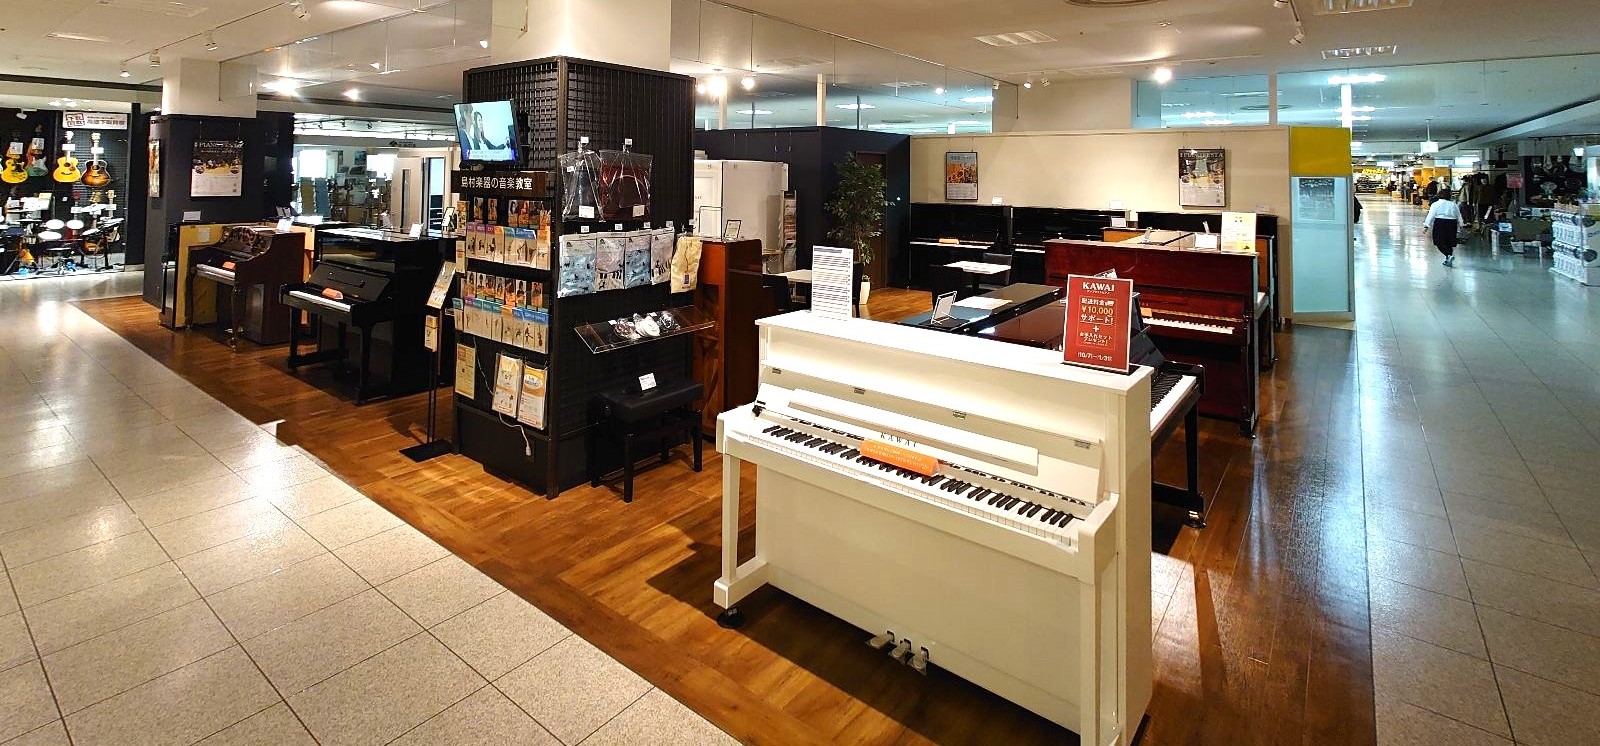 10月20日(金)にFKD宇都宮店は売り場を拡大し、スケールアップオープンいたします。 新たに防音室・グランドピアノ・アップライトピアノを展示し、更に音楽を楽しんでいただける空間となりました。 期間中お得な特典もございますので、皆さまのご来店を心よりお待ちしております。 CONTENTS防音室中古ア […]